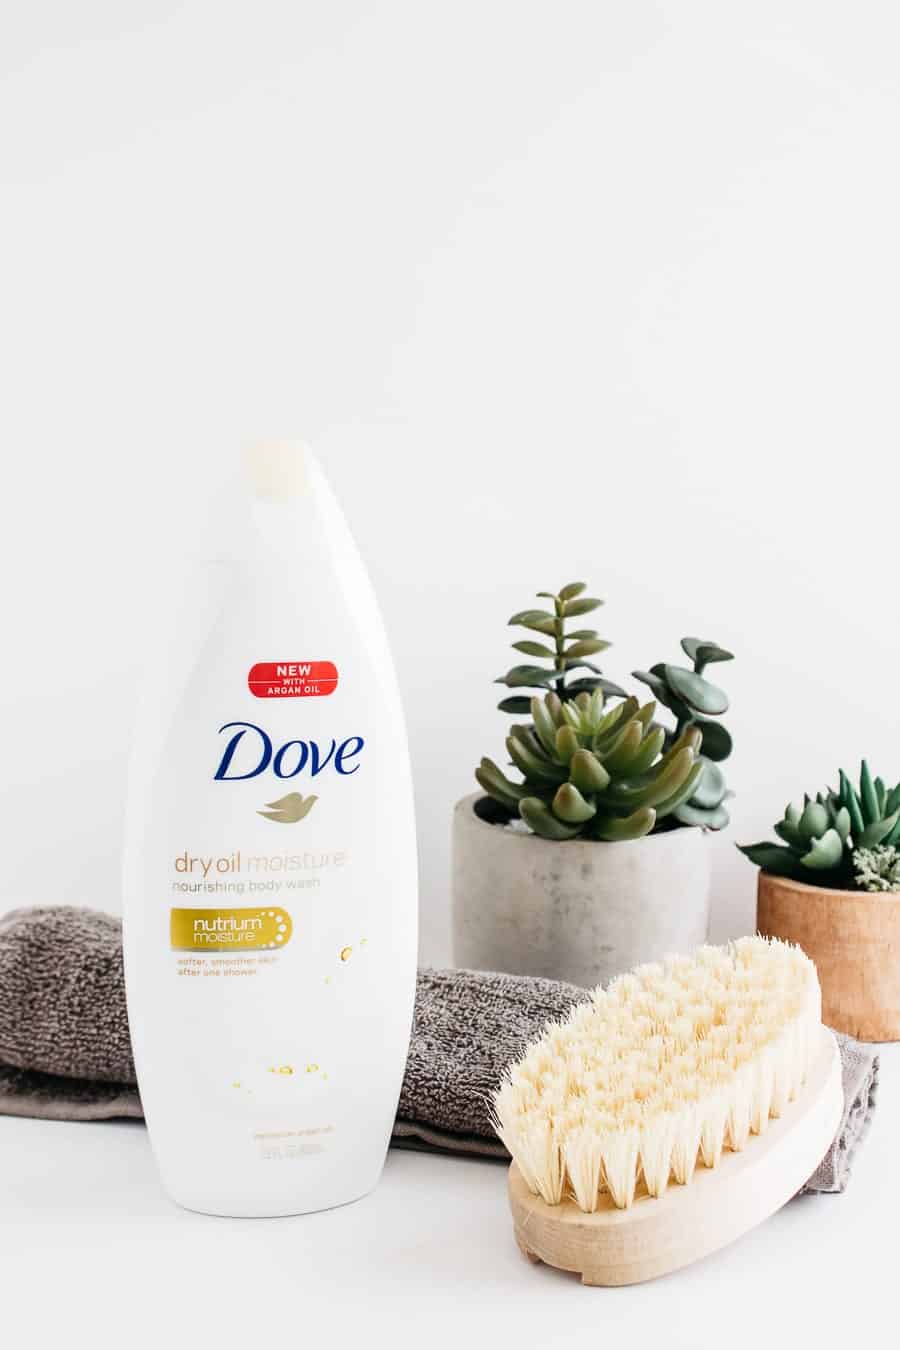 dove moisture dry oil body wash